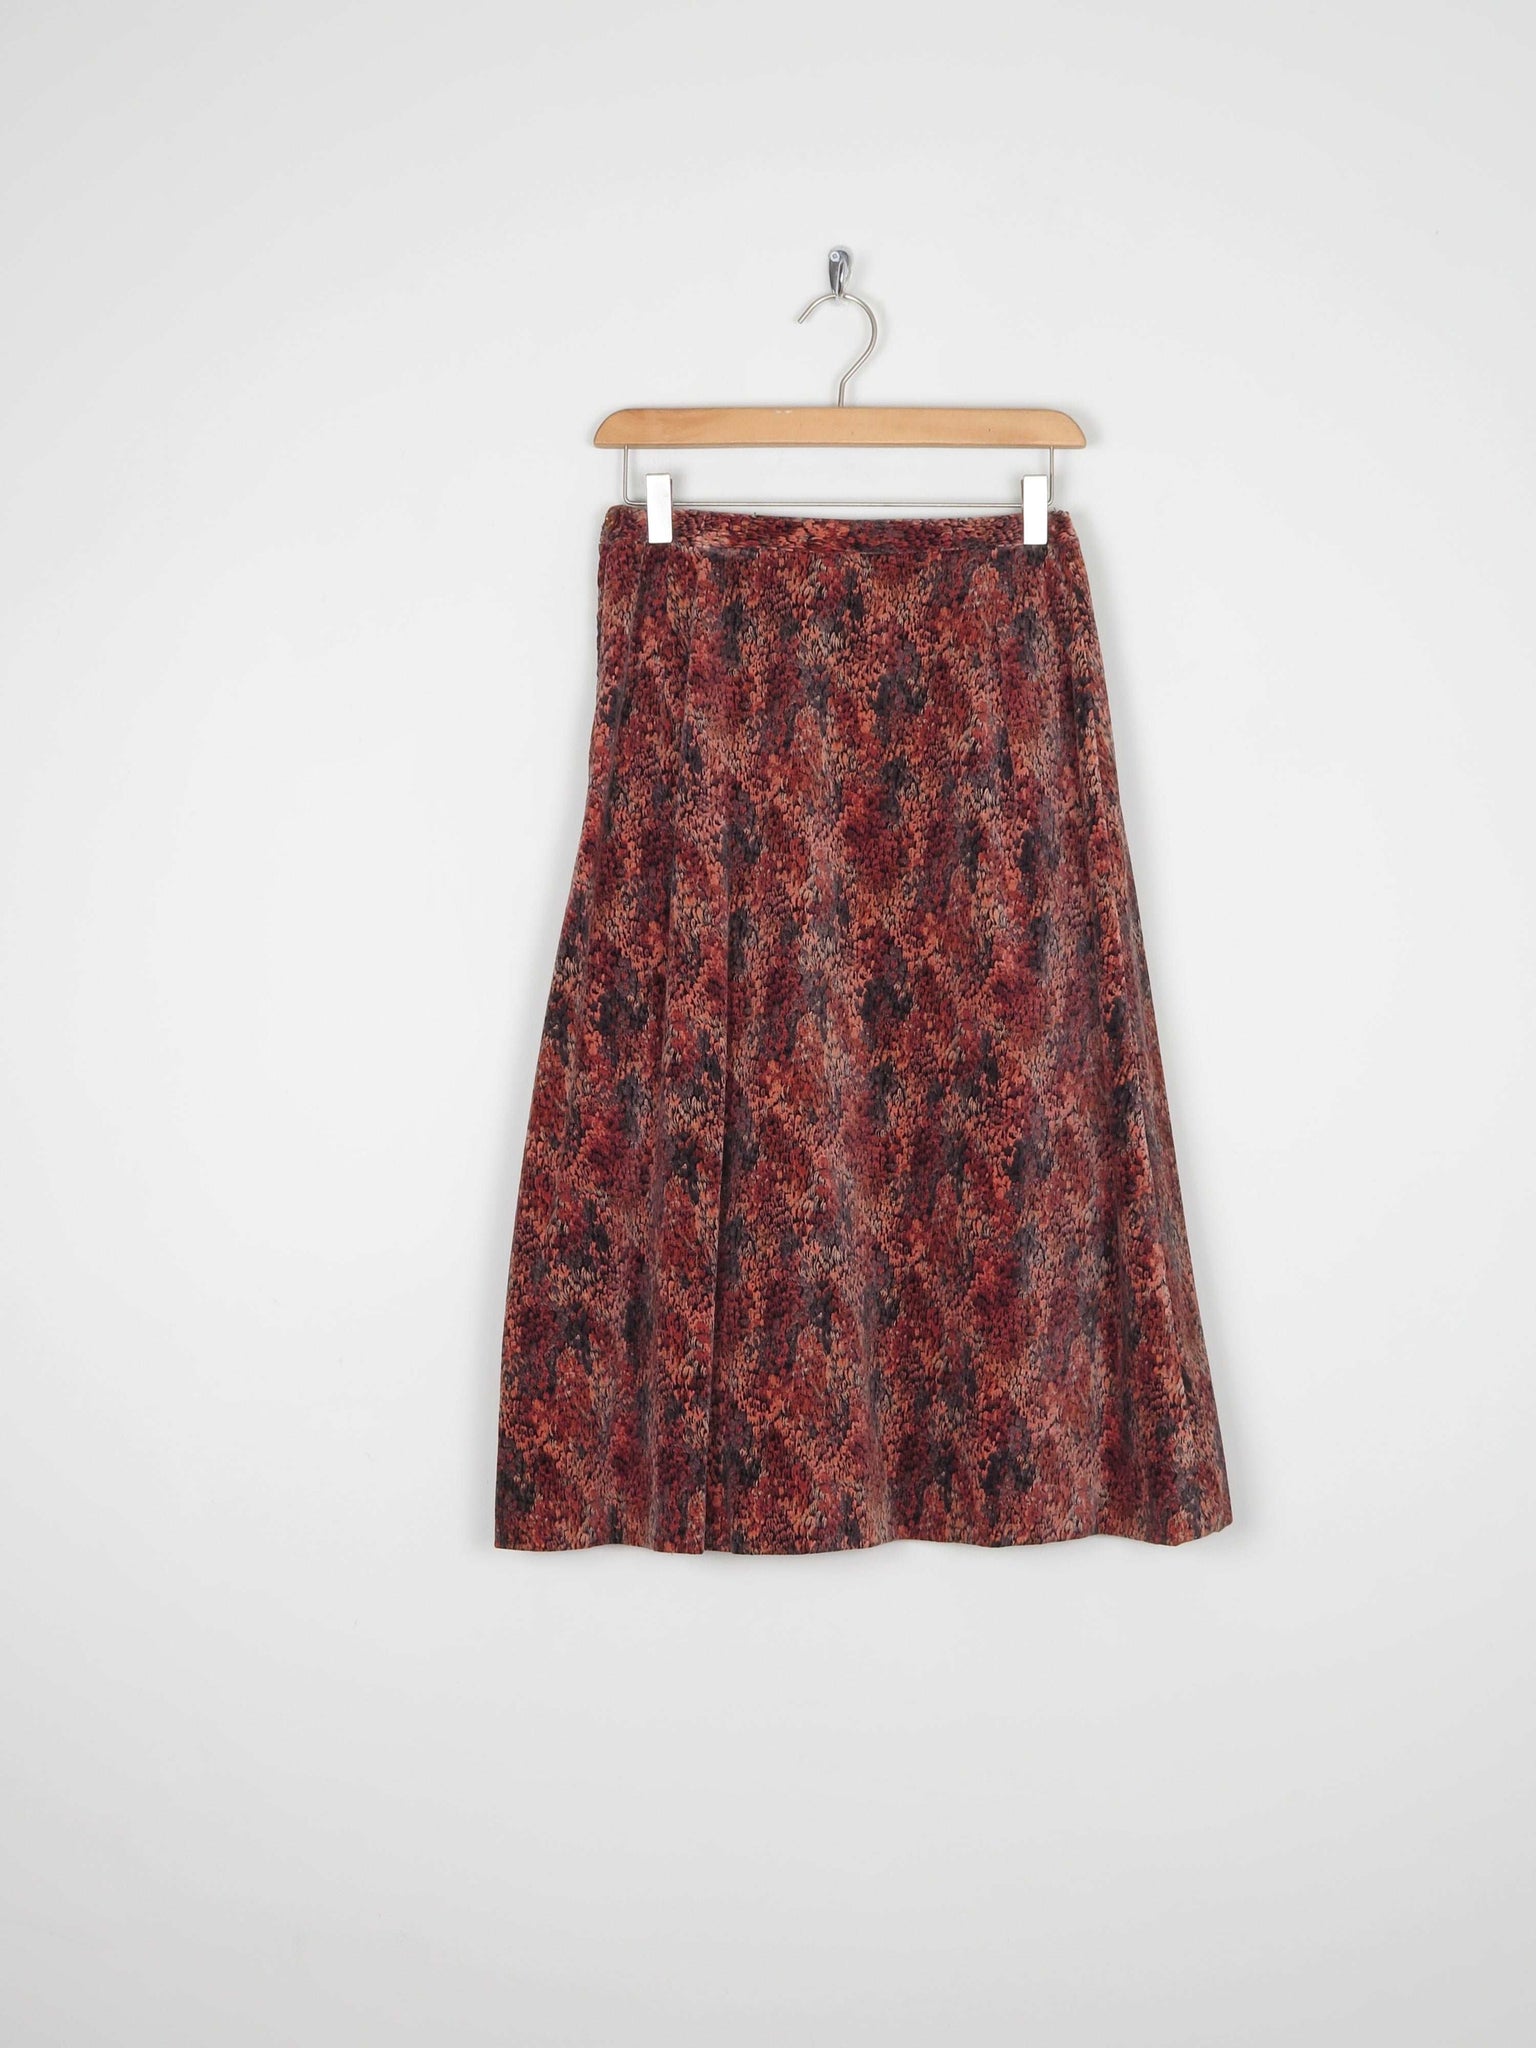 1970s Rust Printed Velvet Skirt 27/6/8